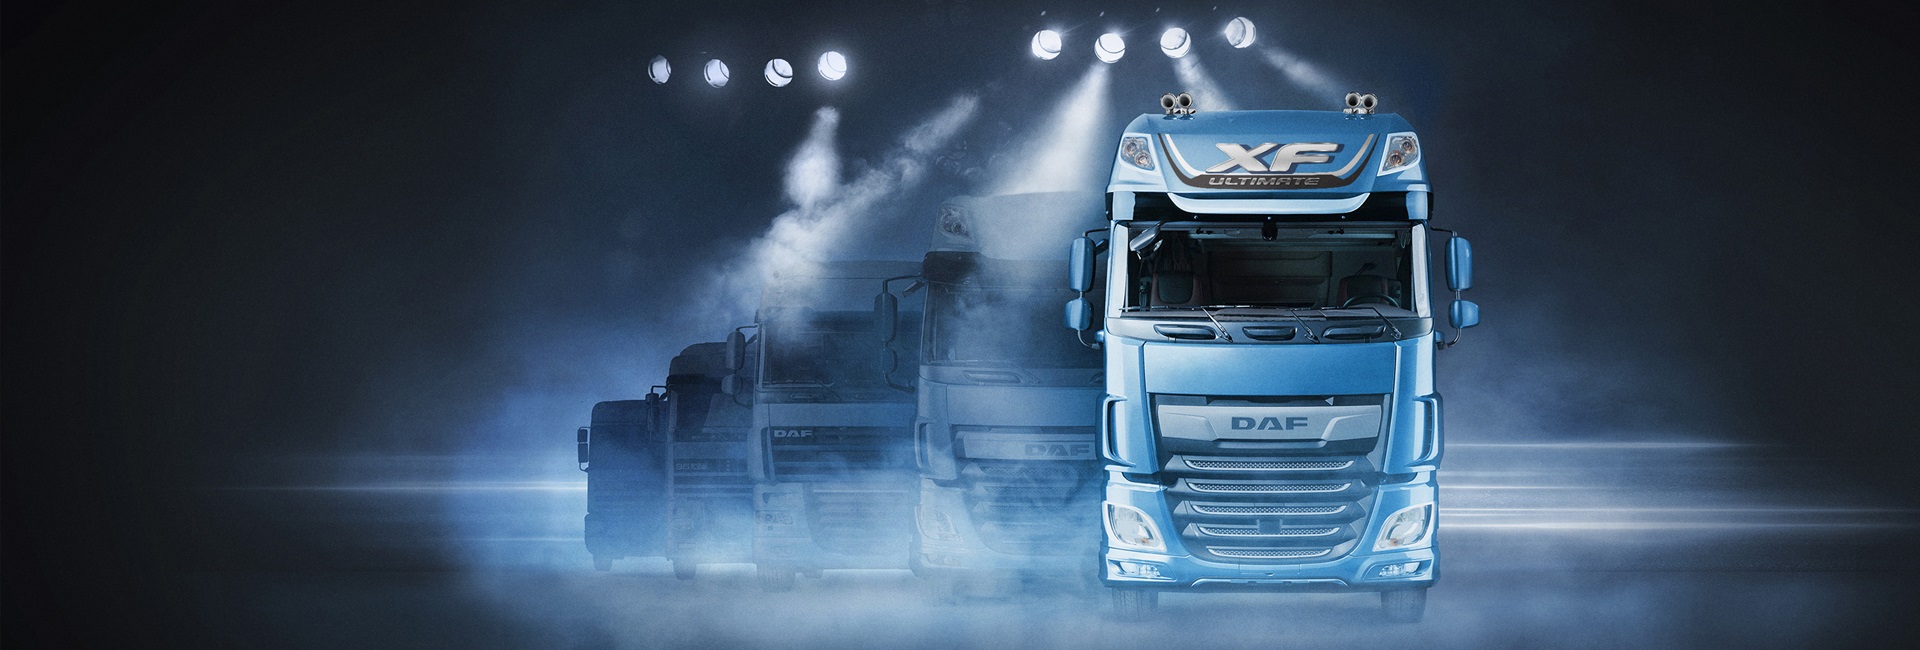 Kauf eines Gebrauchtfahrzeugs - DAF Trucks Schweiz